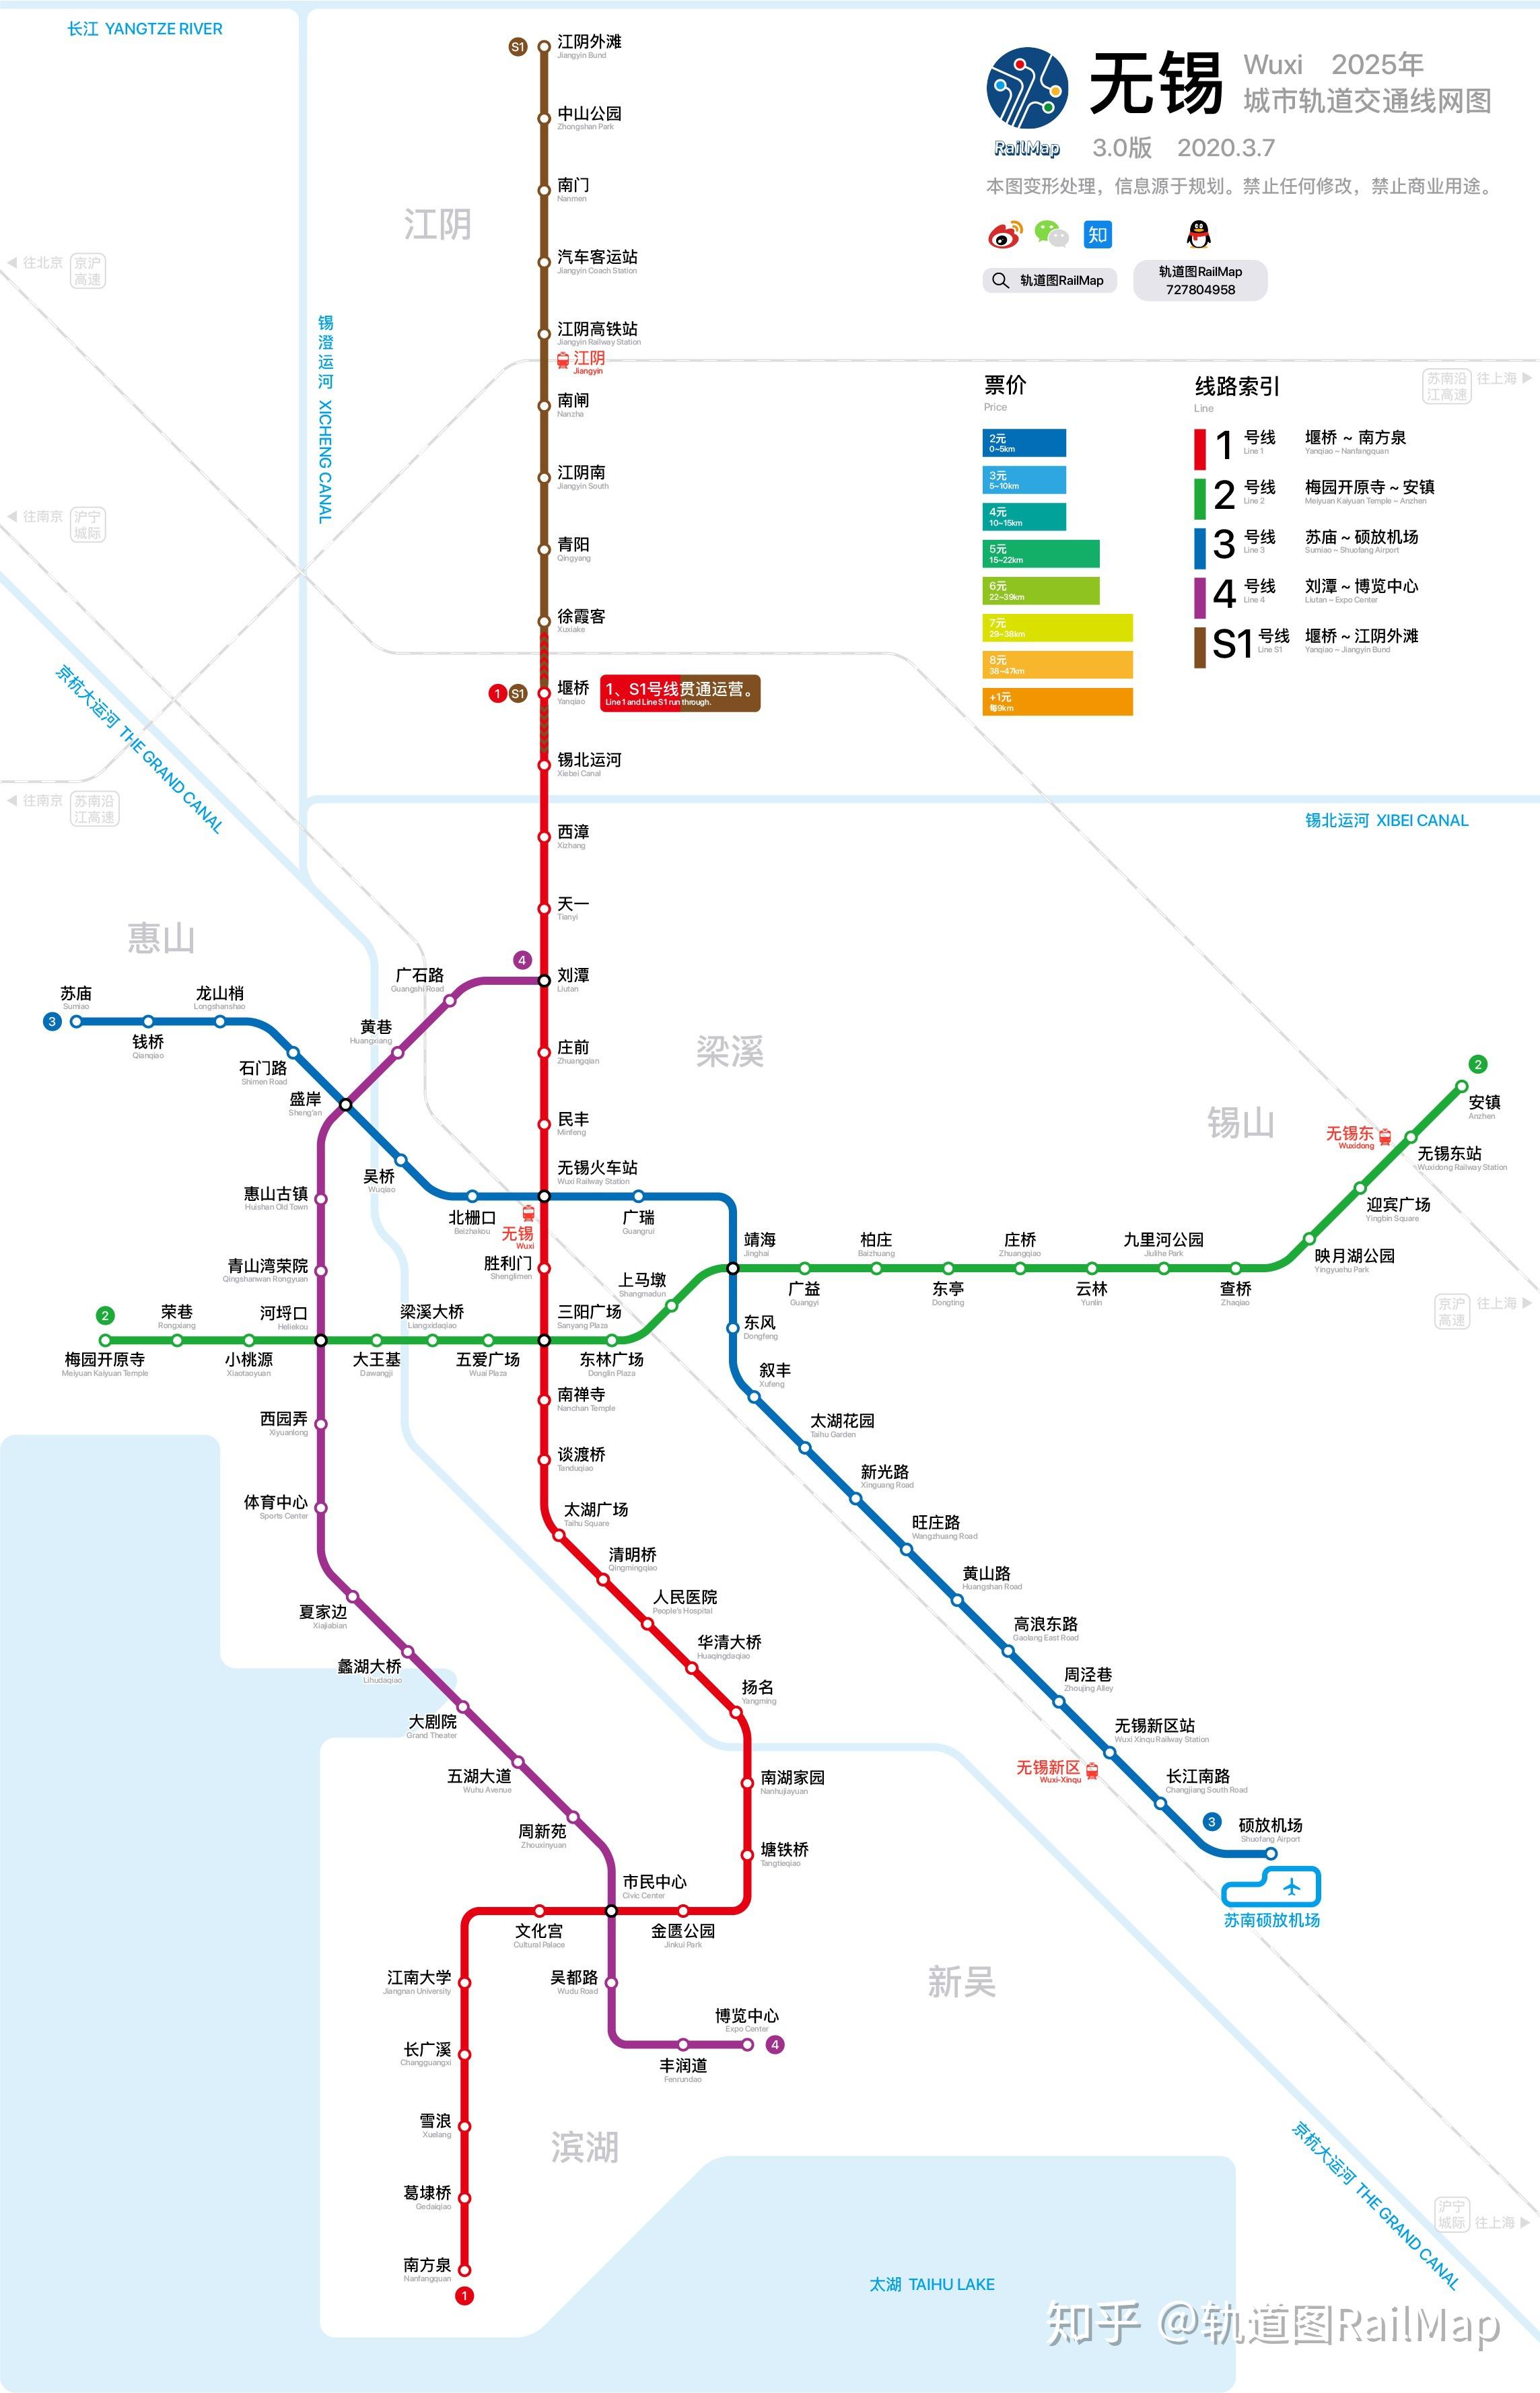 【轨道图railmap】无锡地铁线网图2025年/当前 